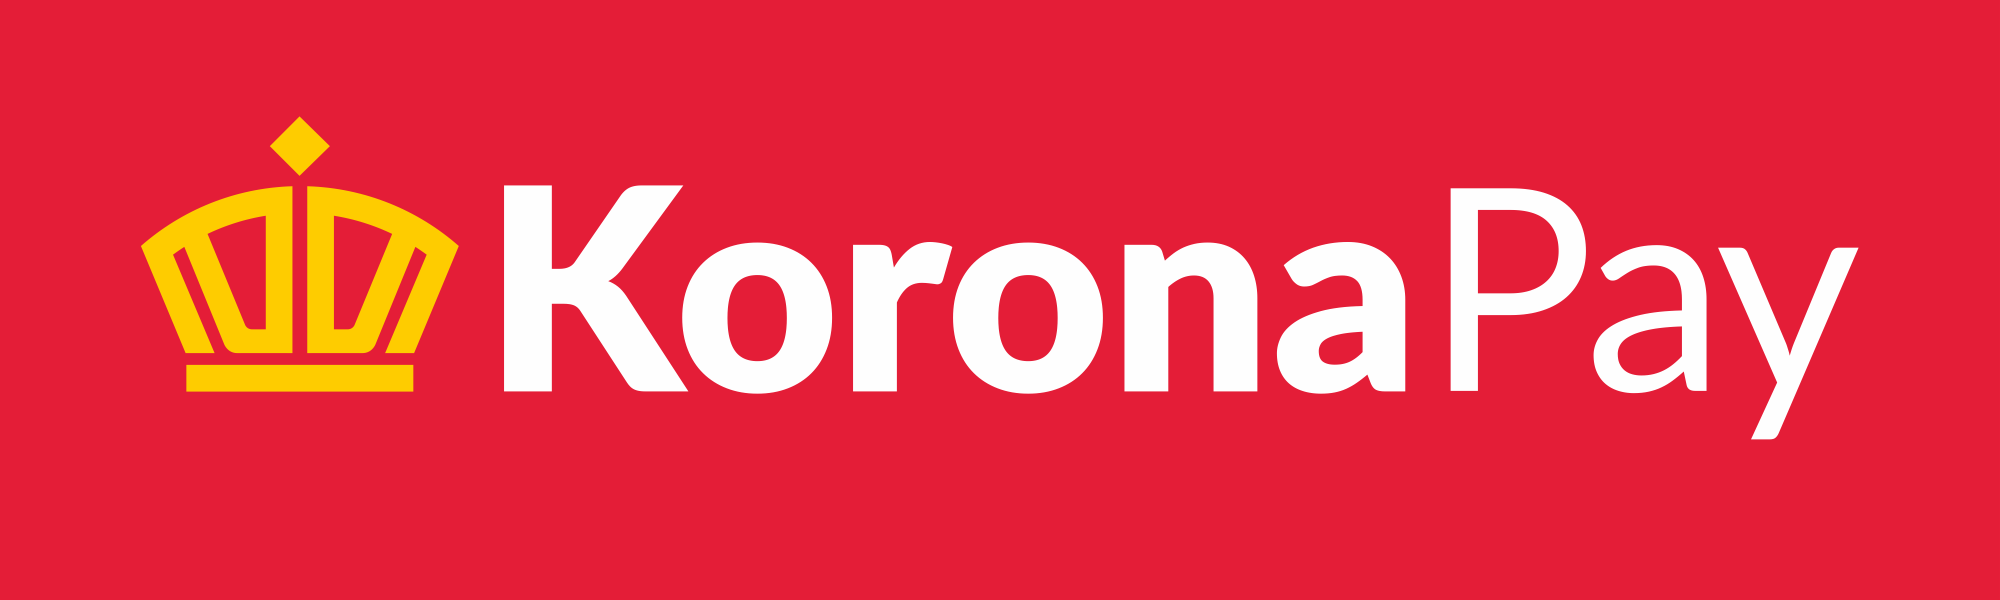 Logo_KoronaPay.png